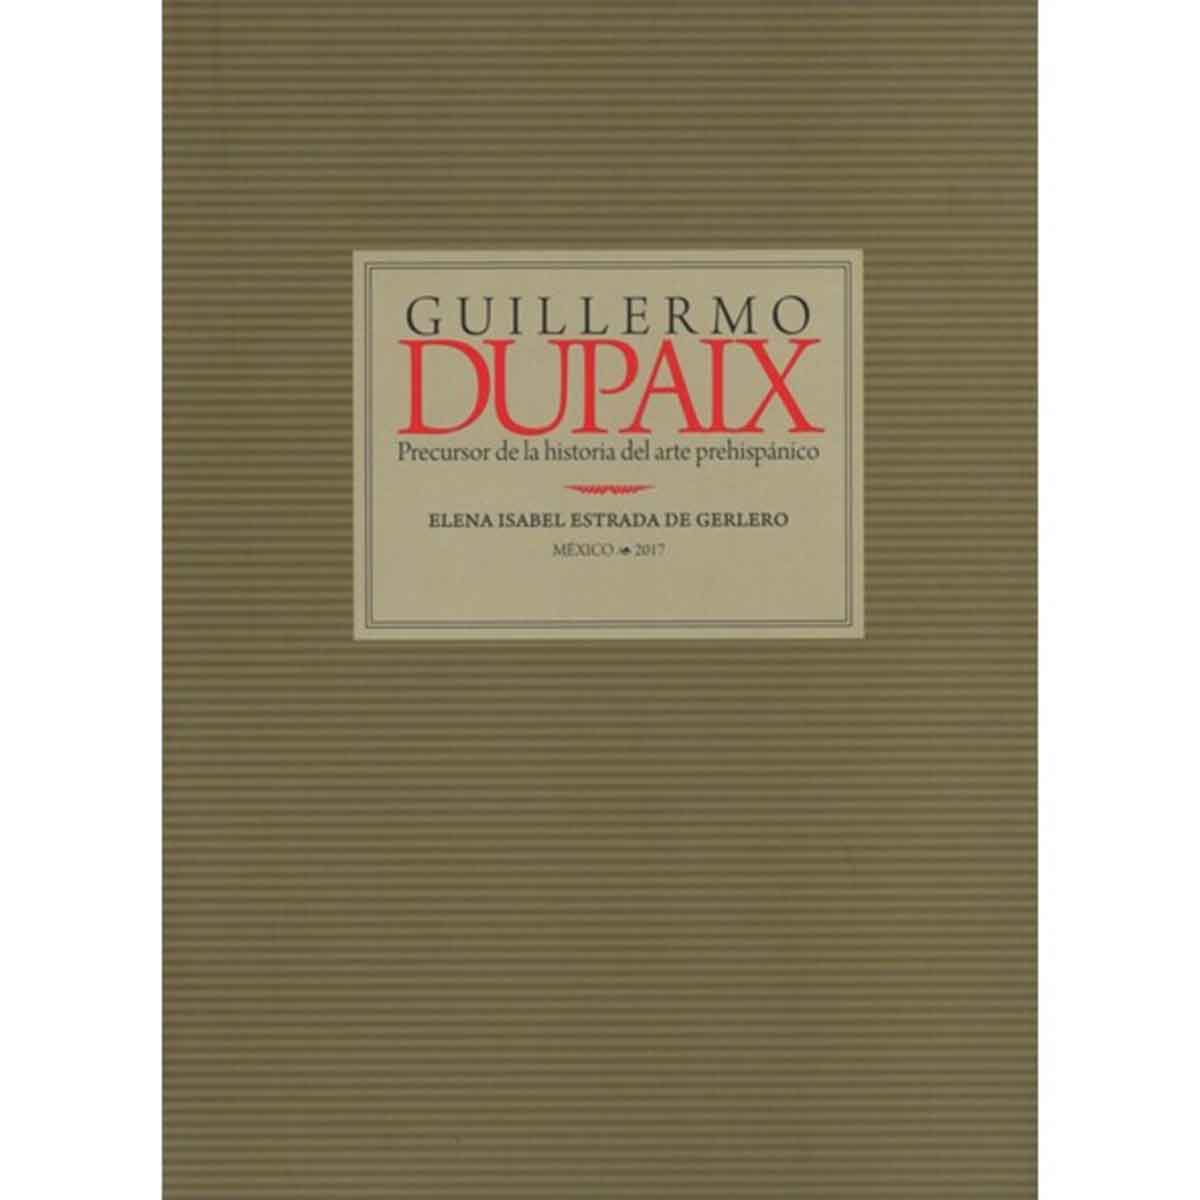 GUILLERMO DUPAIX. PRECURSOR DE LA HISTORIA DEL ARTE PREHISPÁNICO